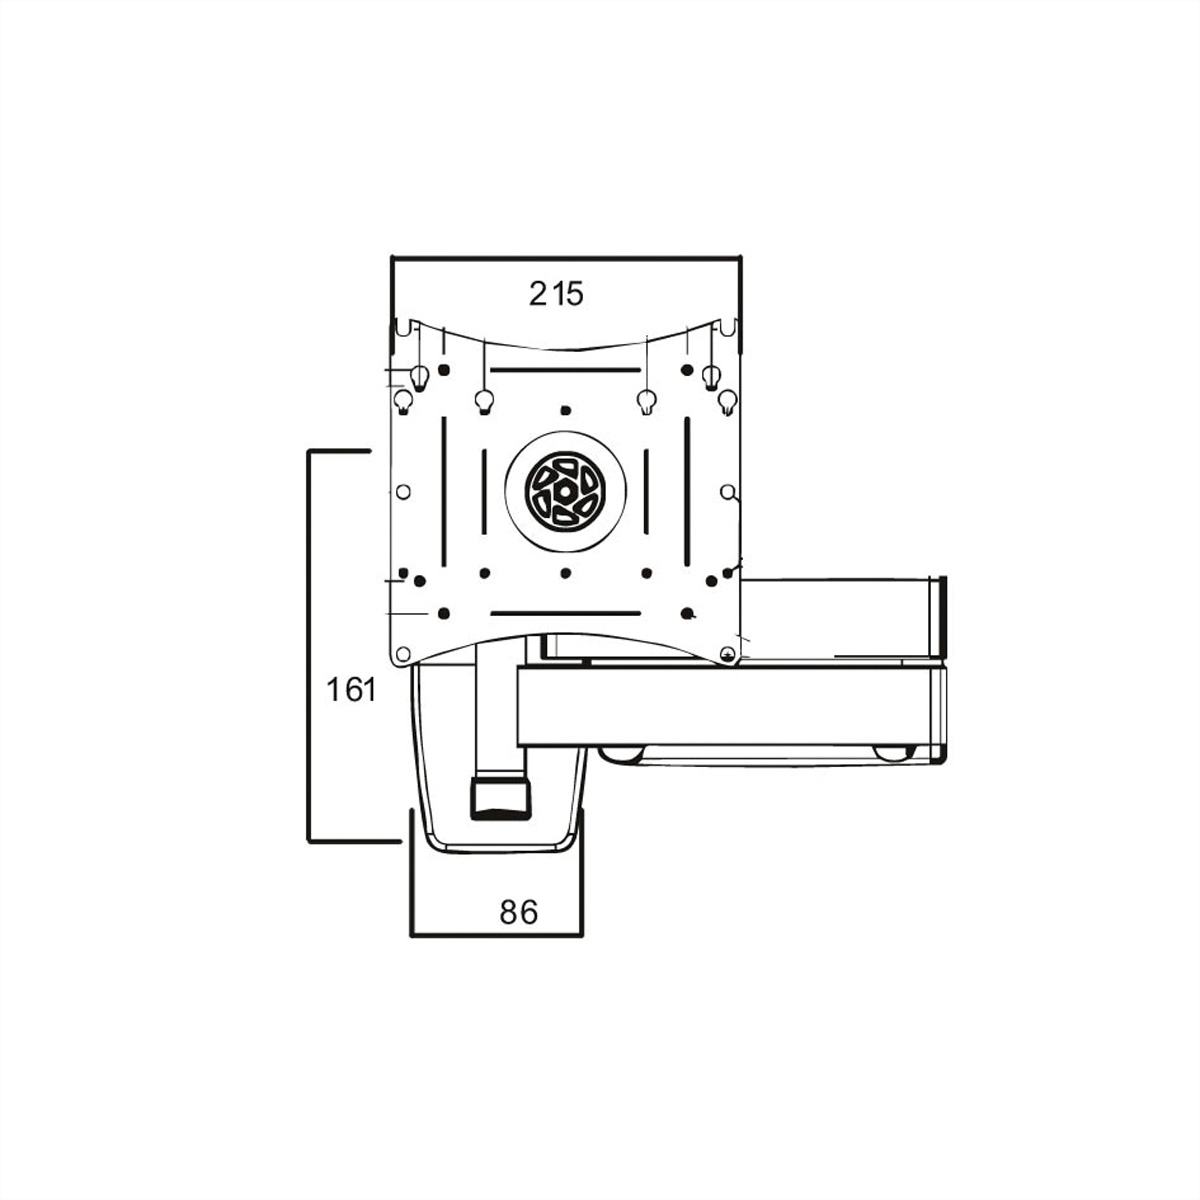 ROLINE - Verstellbarer Arm für LCD-Display - Stahl - Schwarz - Bildschirmgröße: 25.4-101.6cm